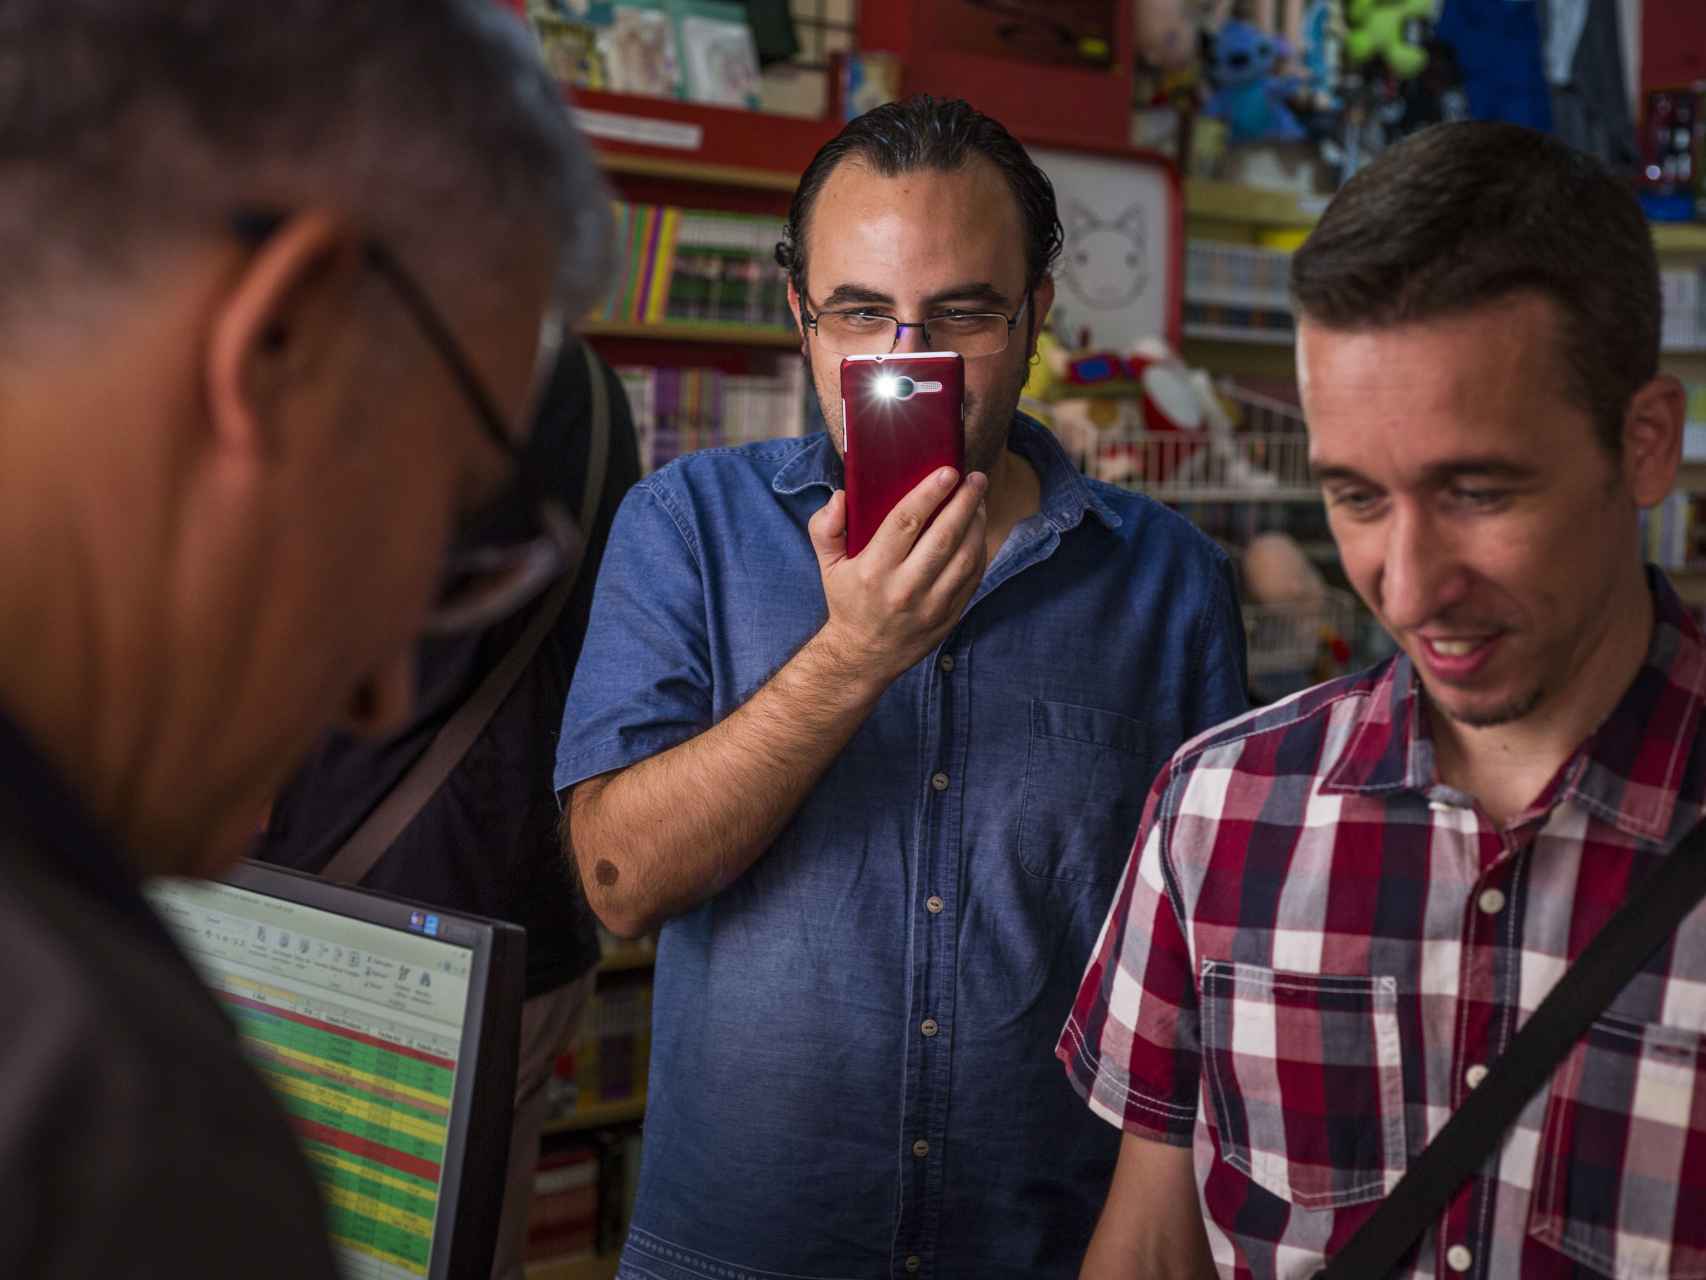 El periodista y actor de doblaje, Jose Antonio Gavira, firmando un recuerdo a uno de los seguidores de Bola de Dragón, mientras es fotografiado por el móvil de otro de ellos.